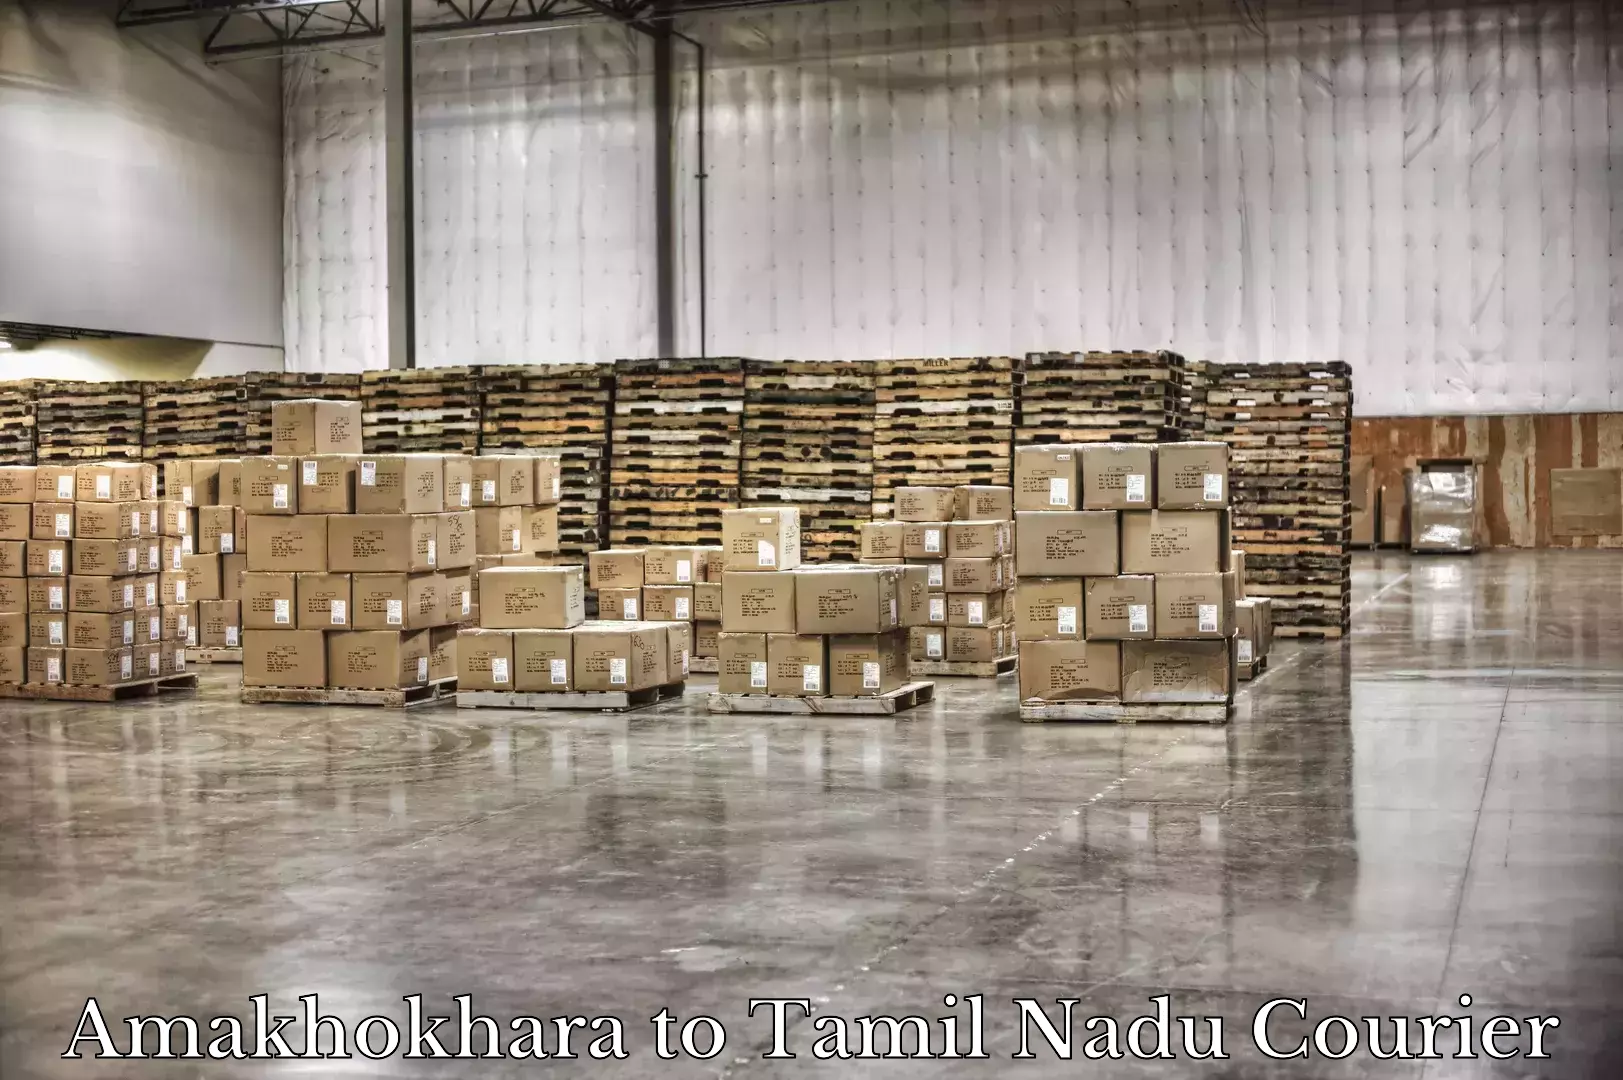 Luggage shipping consultation Amakhokhara to Tamil Nadu